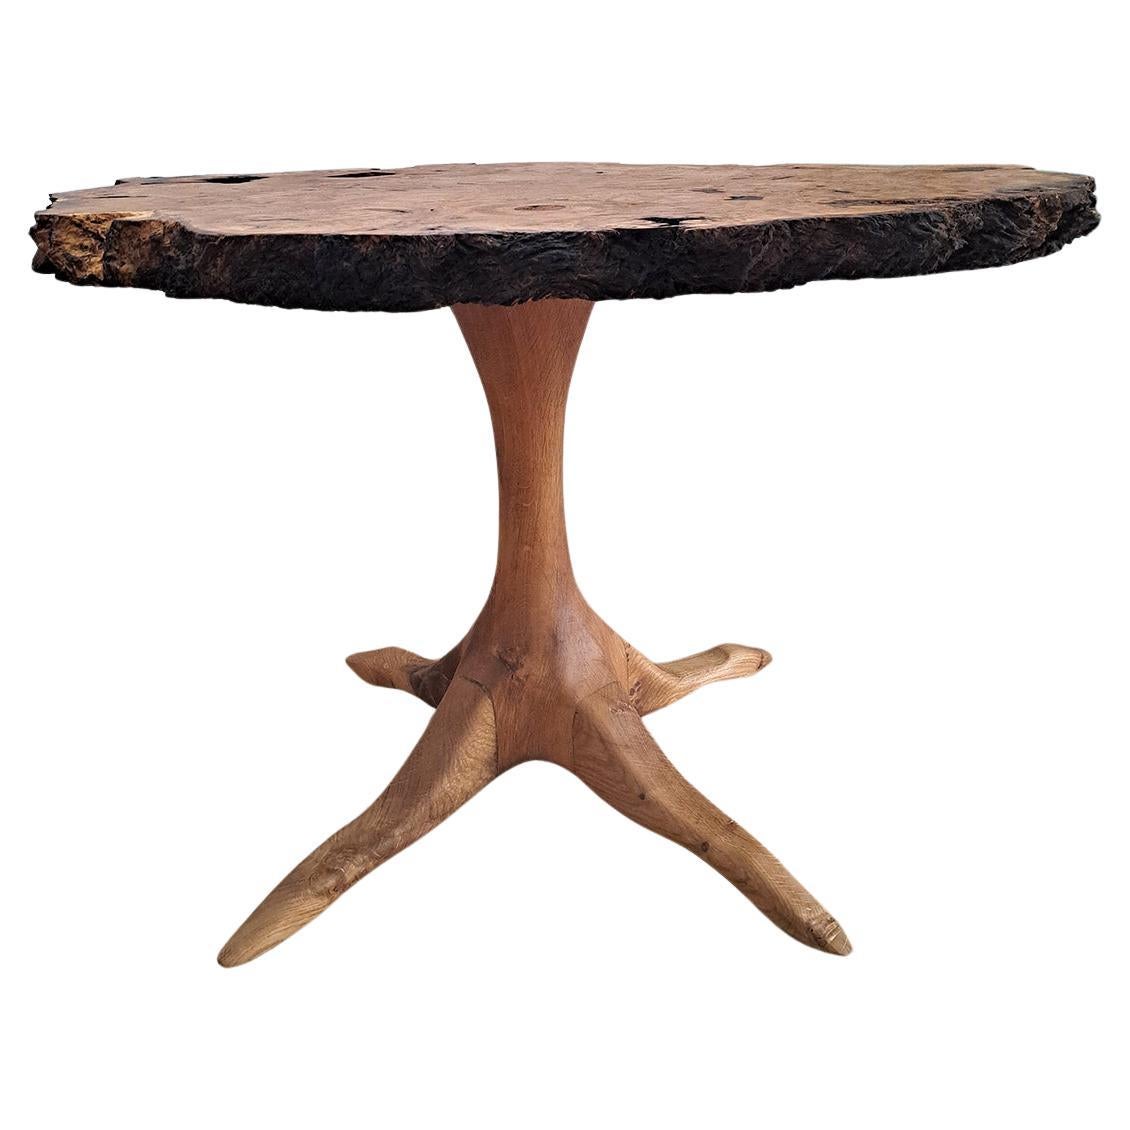 Sehr eleganter Beistelltisch aus Ulmenwurzelholz mit lebendiger Kante. Dieser Tisch im brutalistischen Stil ist aus knorrigem Holz gefertigt. Gedrehter Sockel auf vier geschnitzten Füßen, ebenfalls aus Ulme, die an Vogelfüße erinnern. Entworfen von